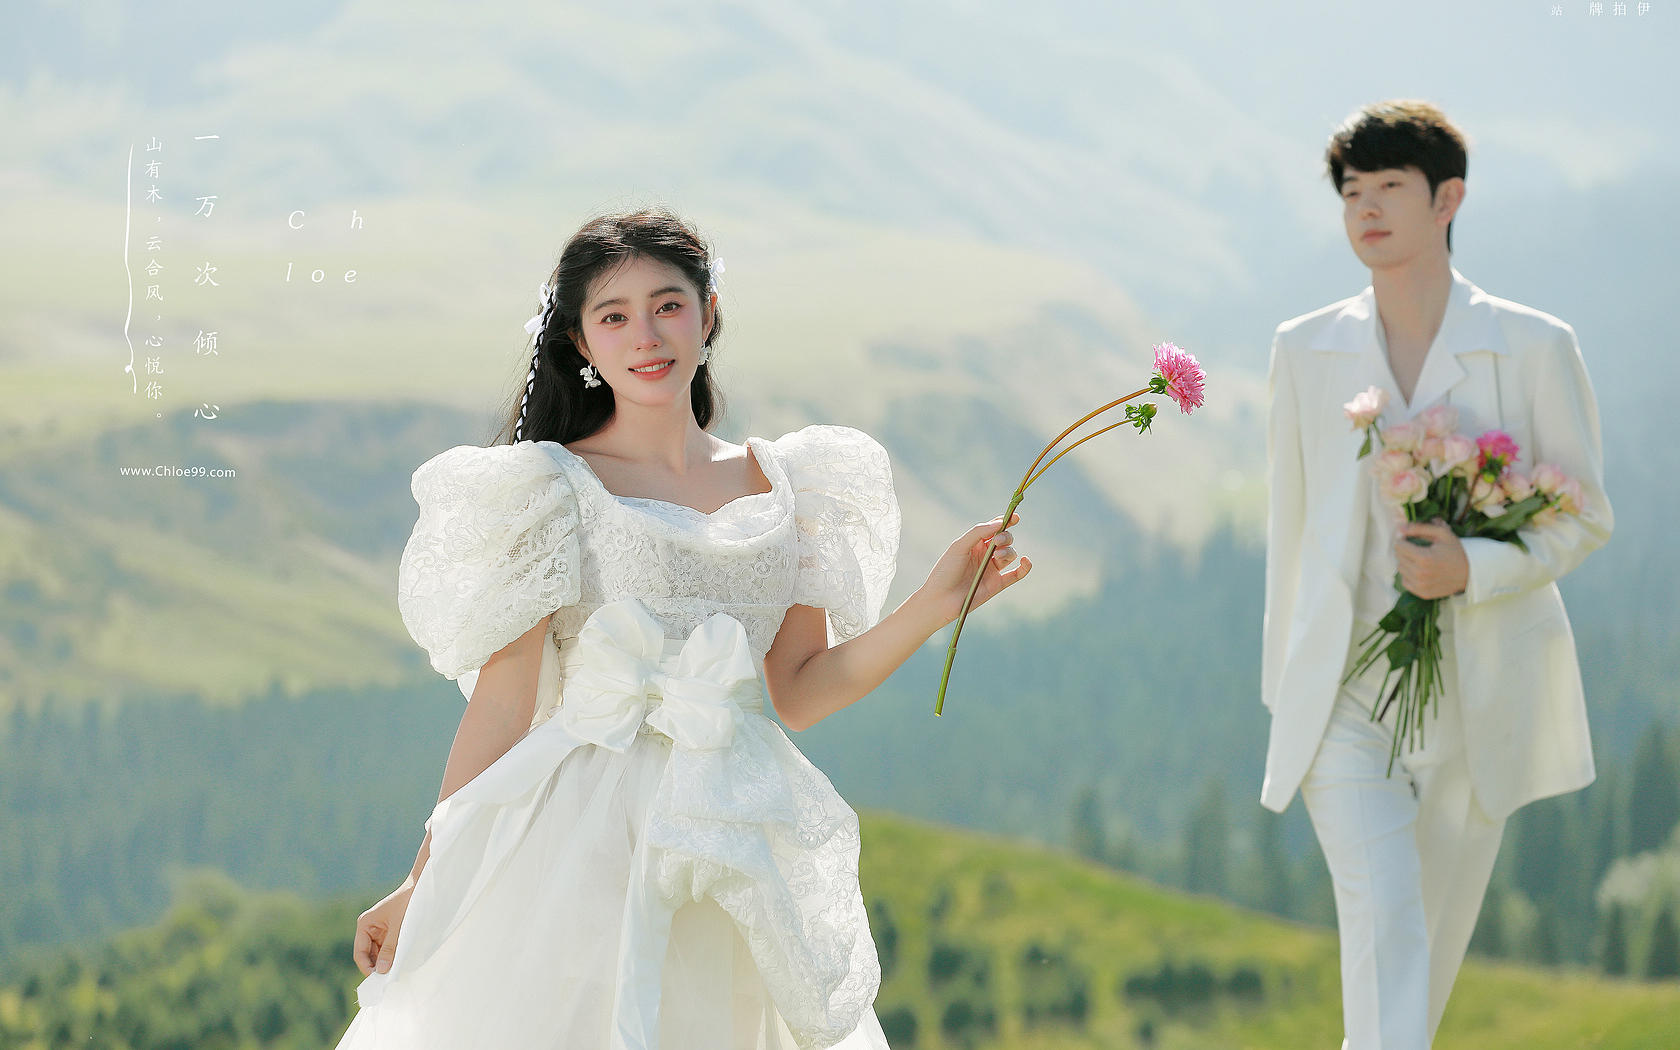 克洛伊旅拍丨花了半个月工资拍了套新疆婚纱照